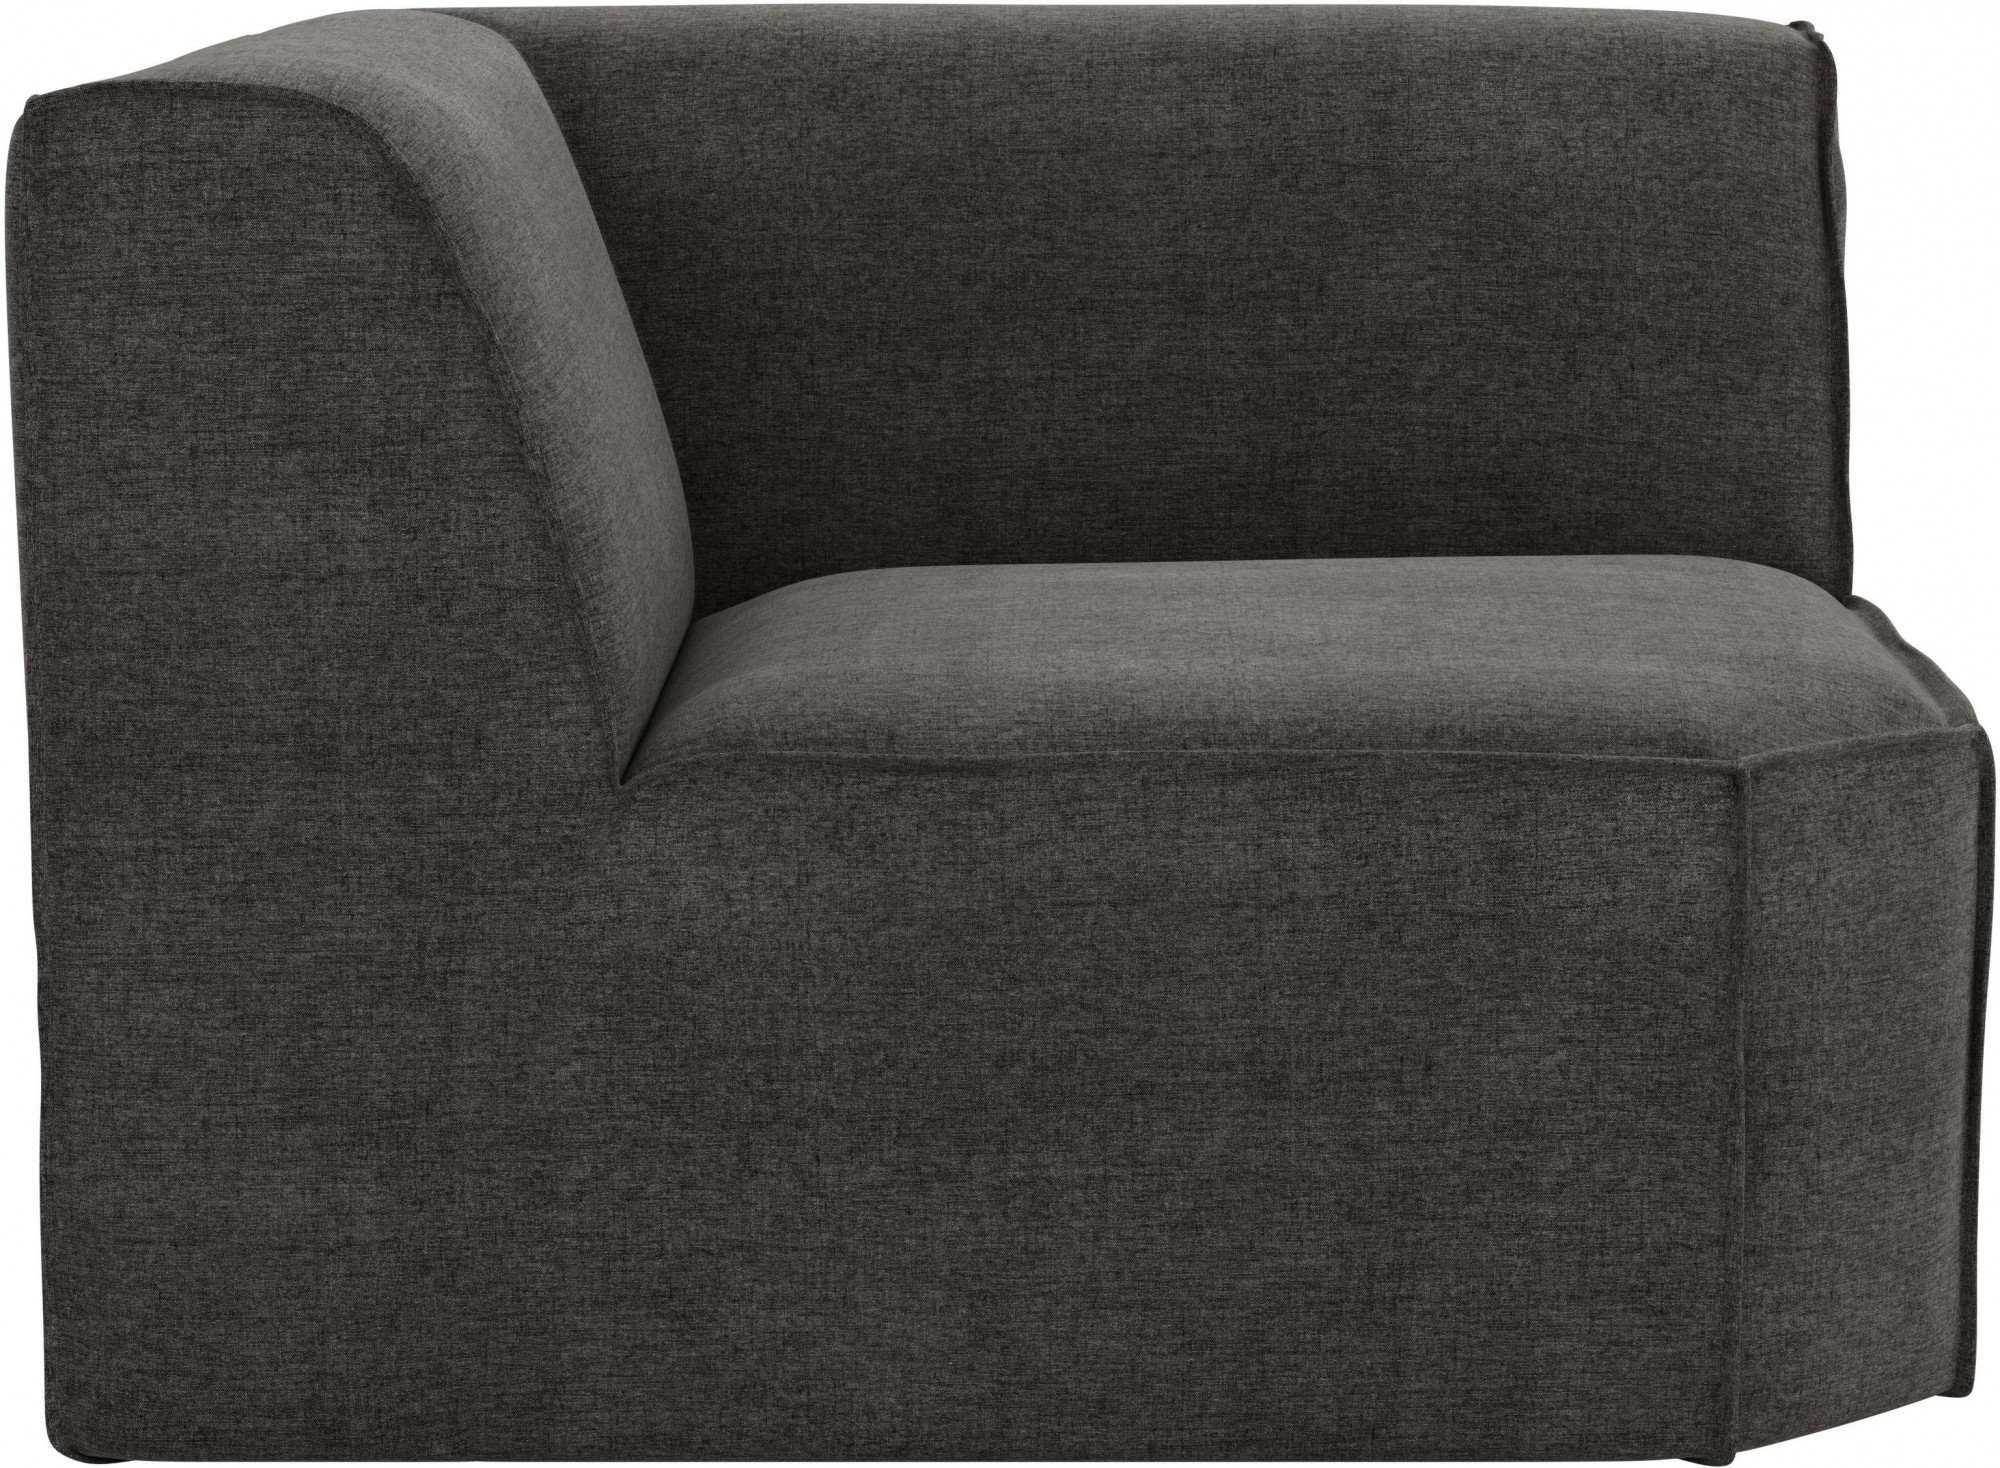 Taschenfederkern, an Sofa-Eckelement dark mit Norvid, Auswahl Modulen RAUM.ID gray große modular,